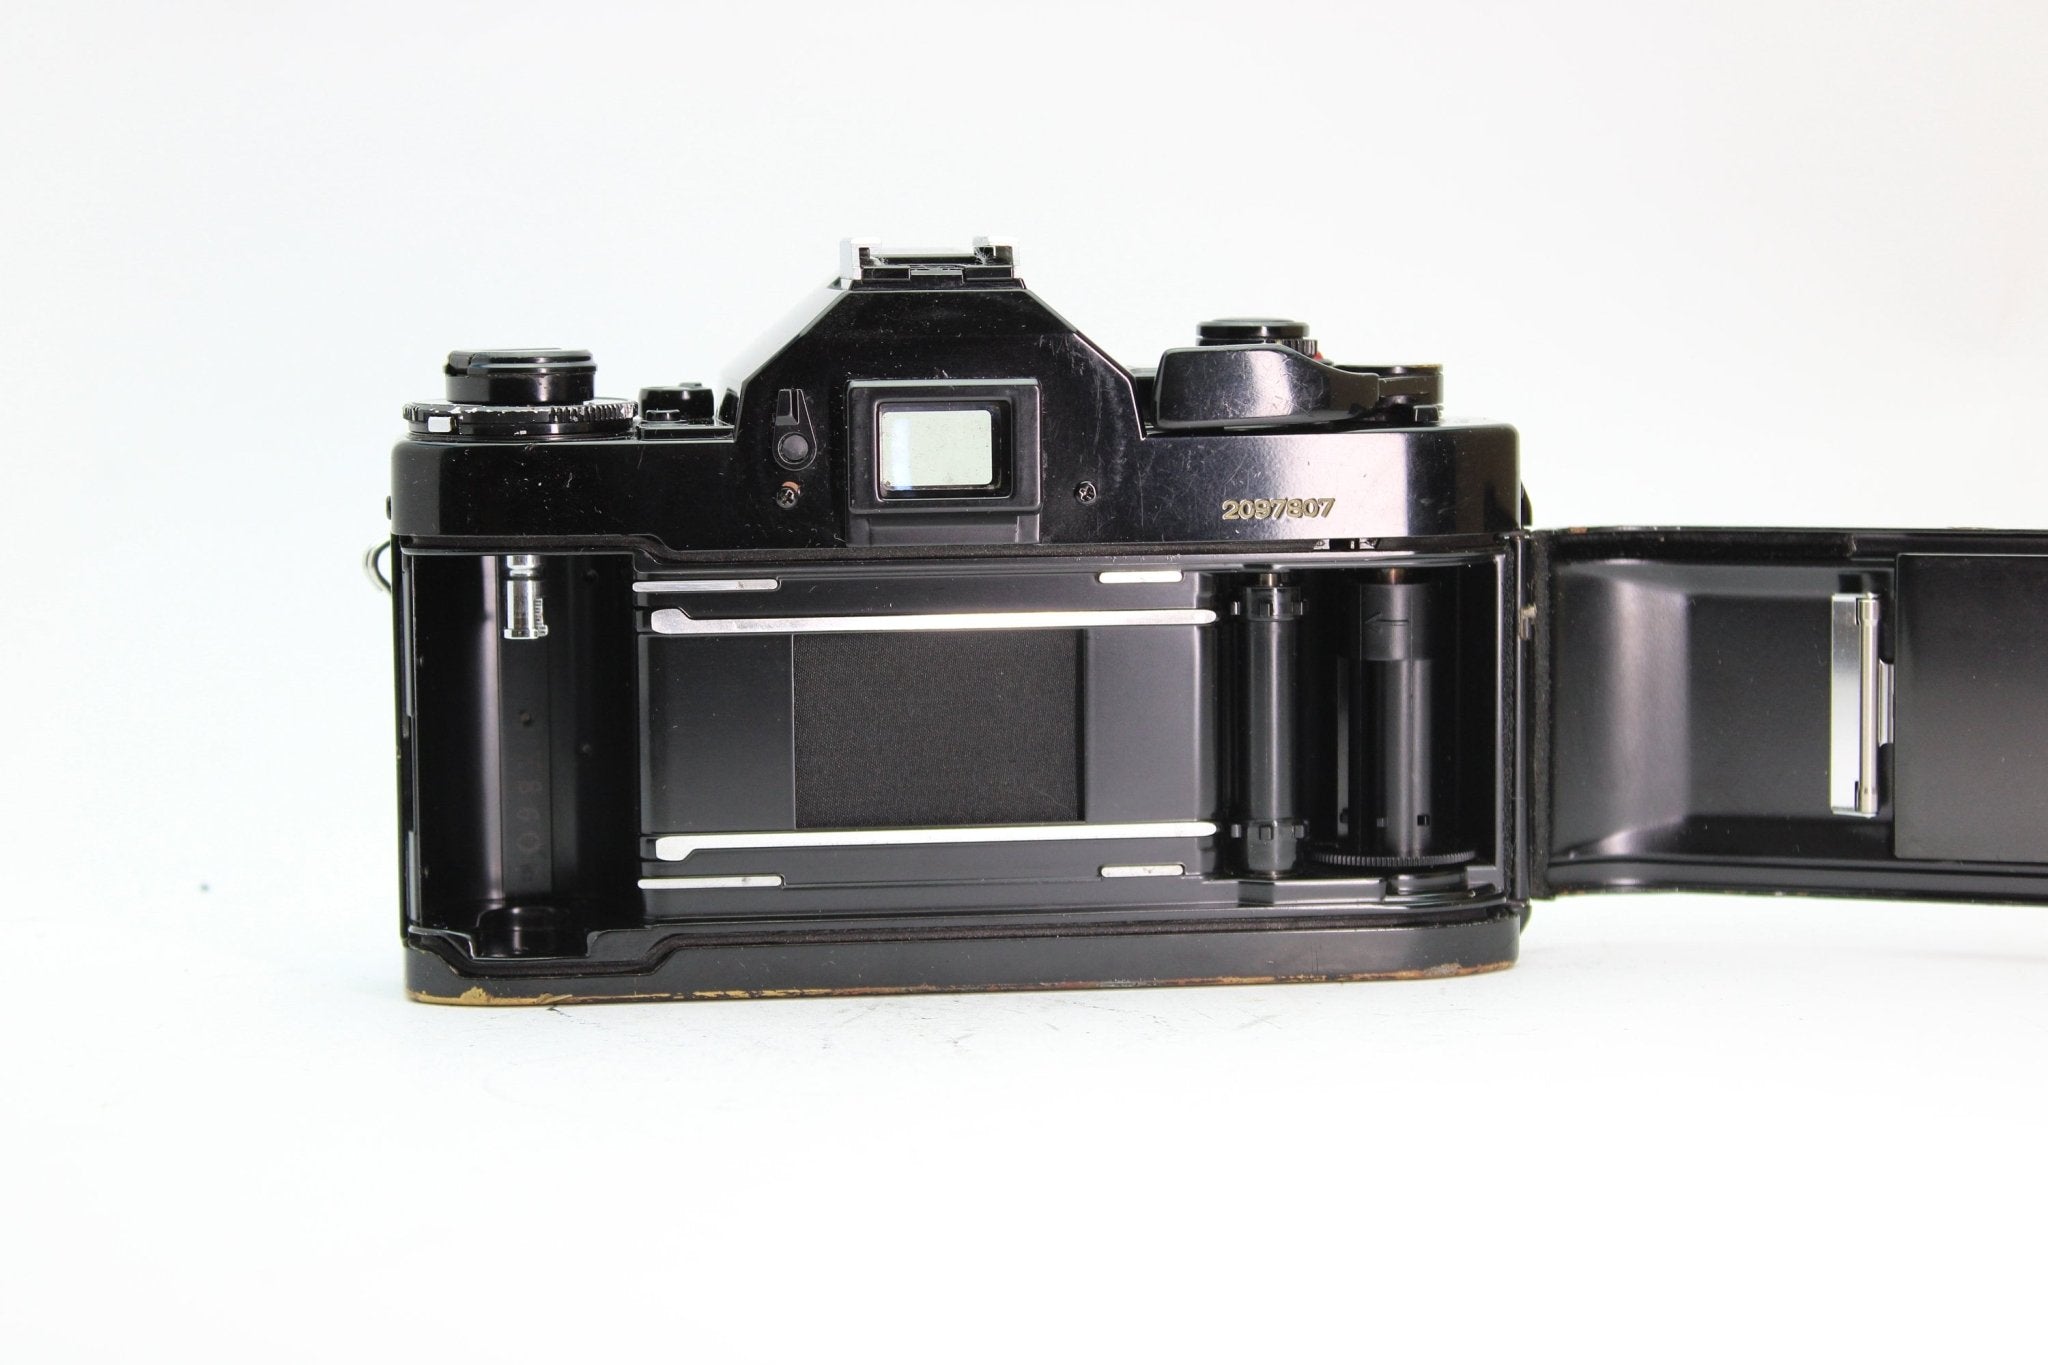 Canon A-1 + 28mm f/2.8 - Canon